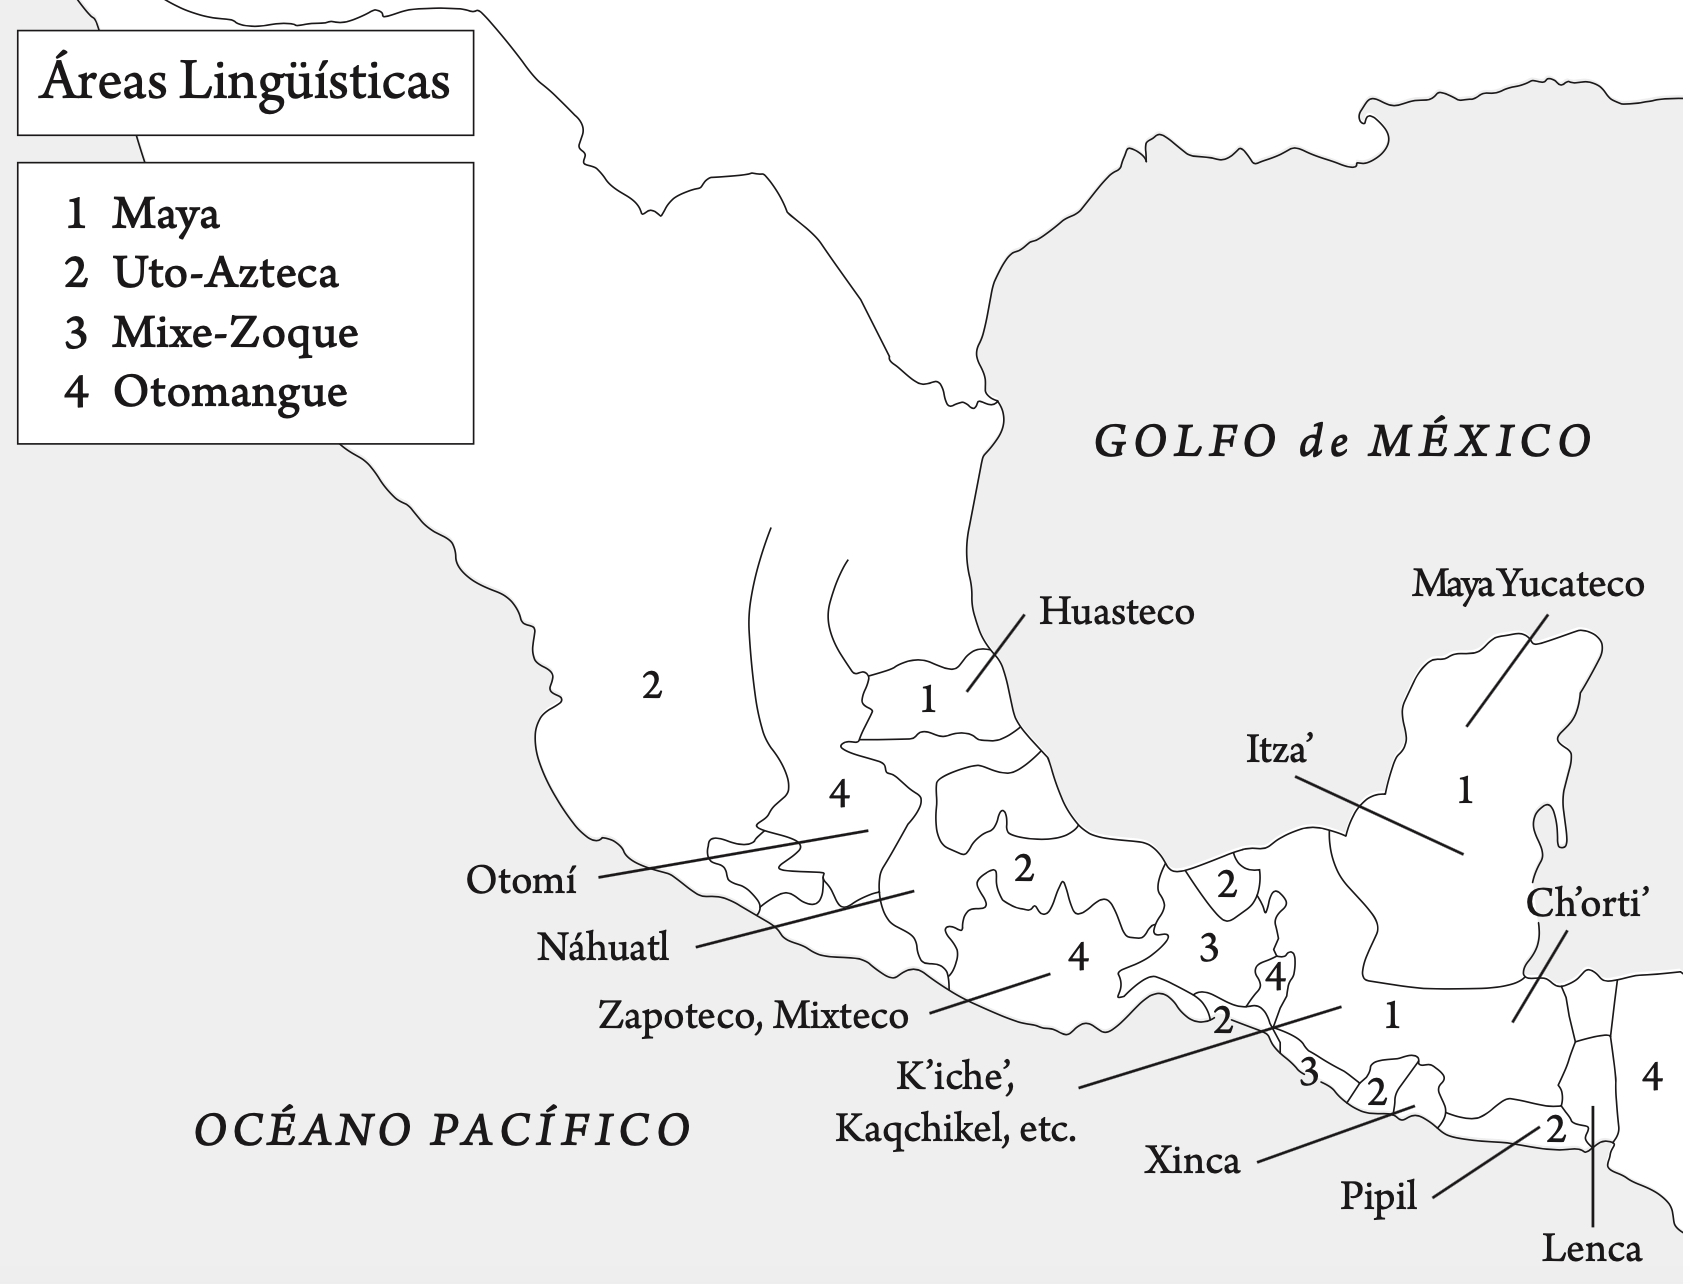 Mapa de áreas lingüísticas mesoamericanas